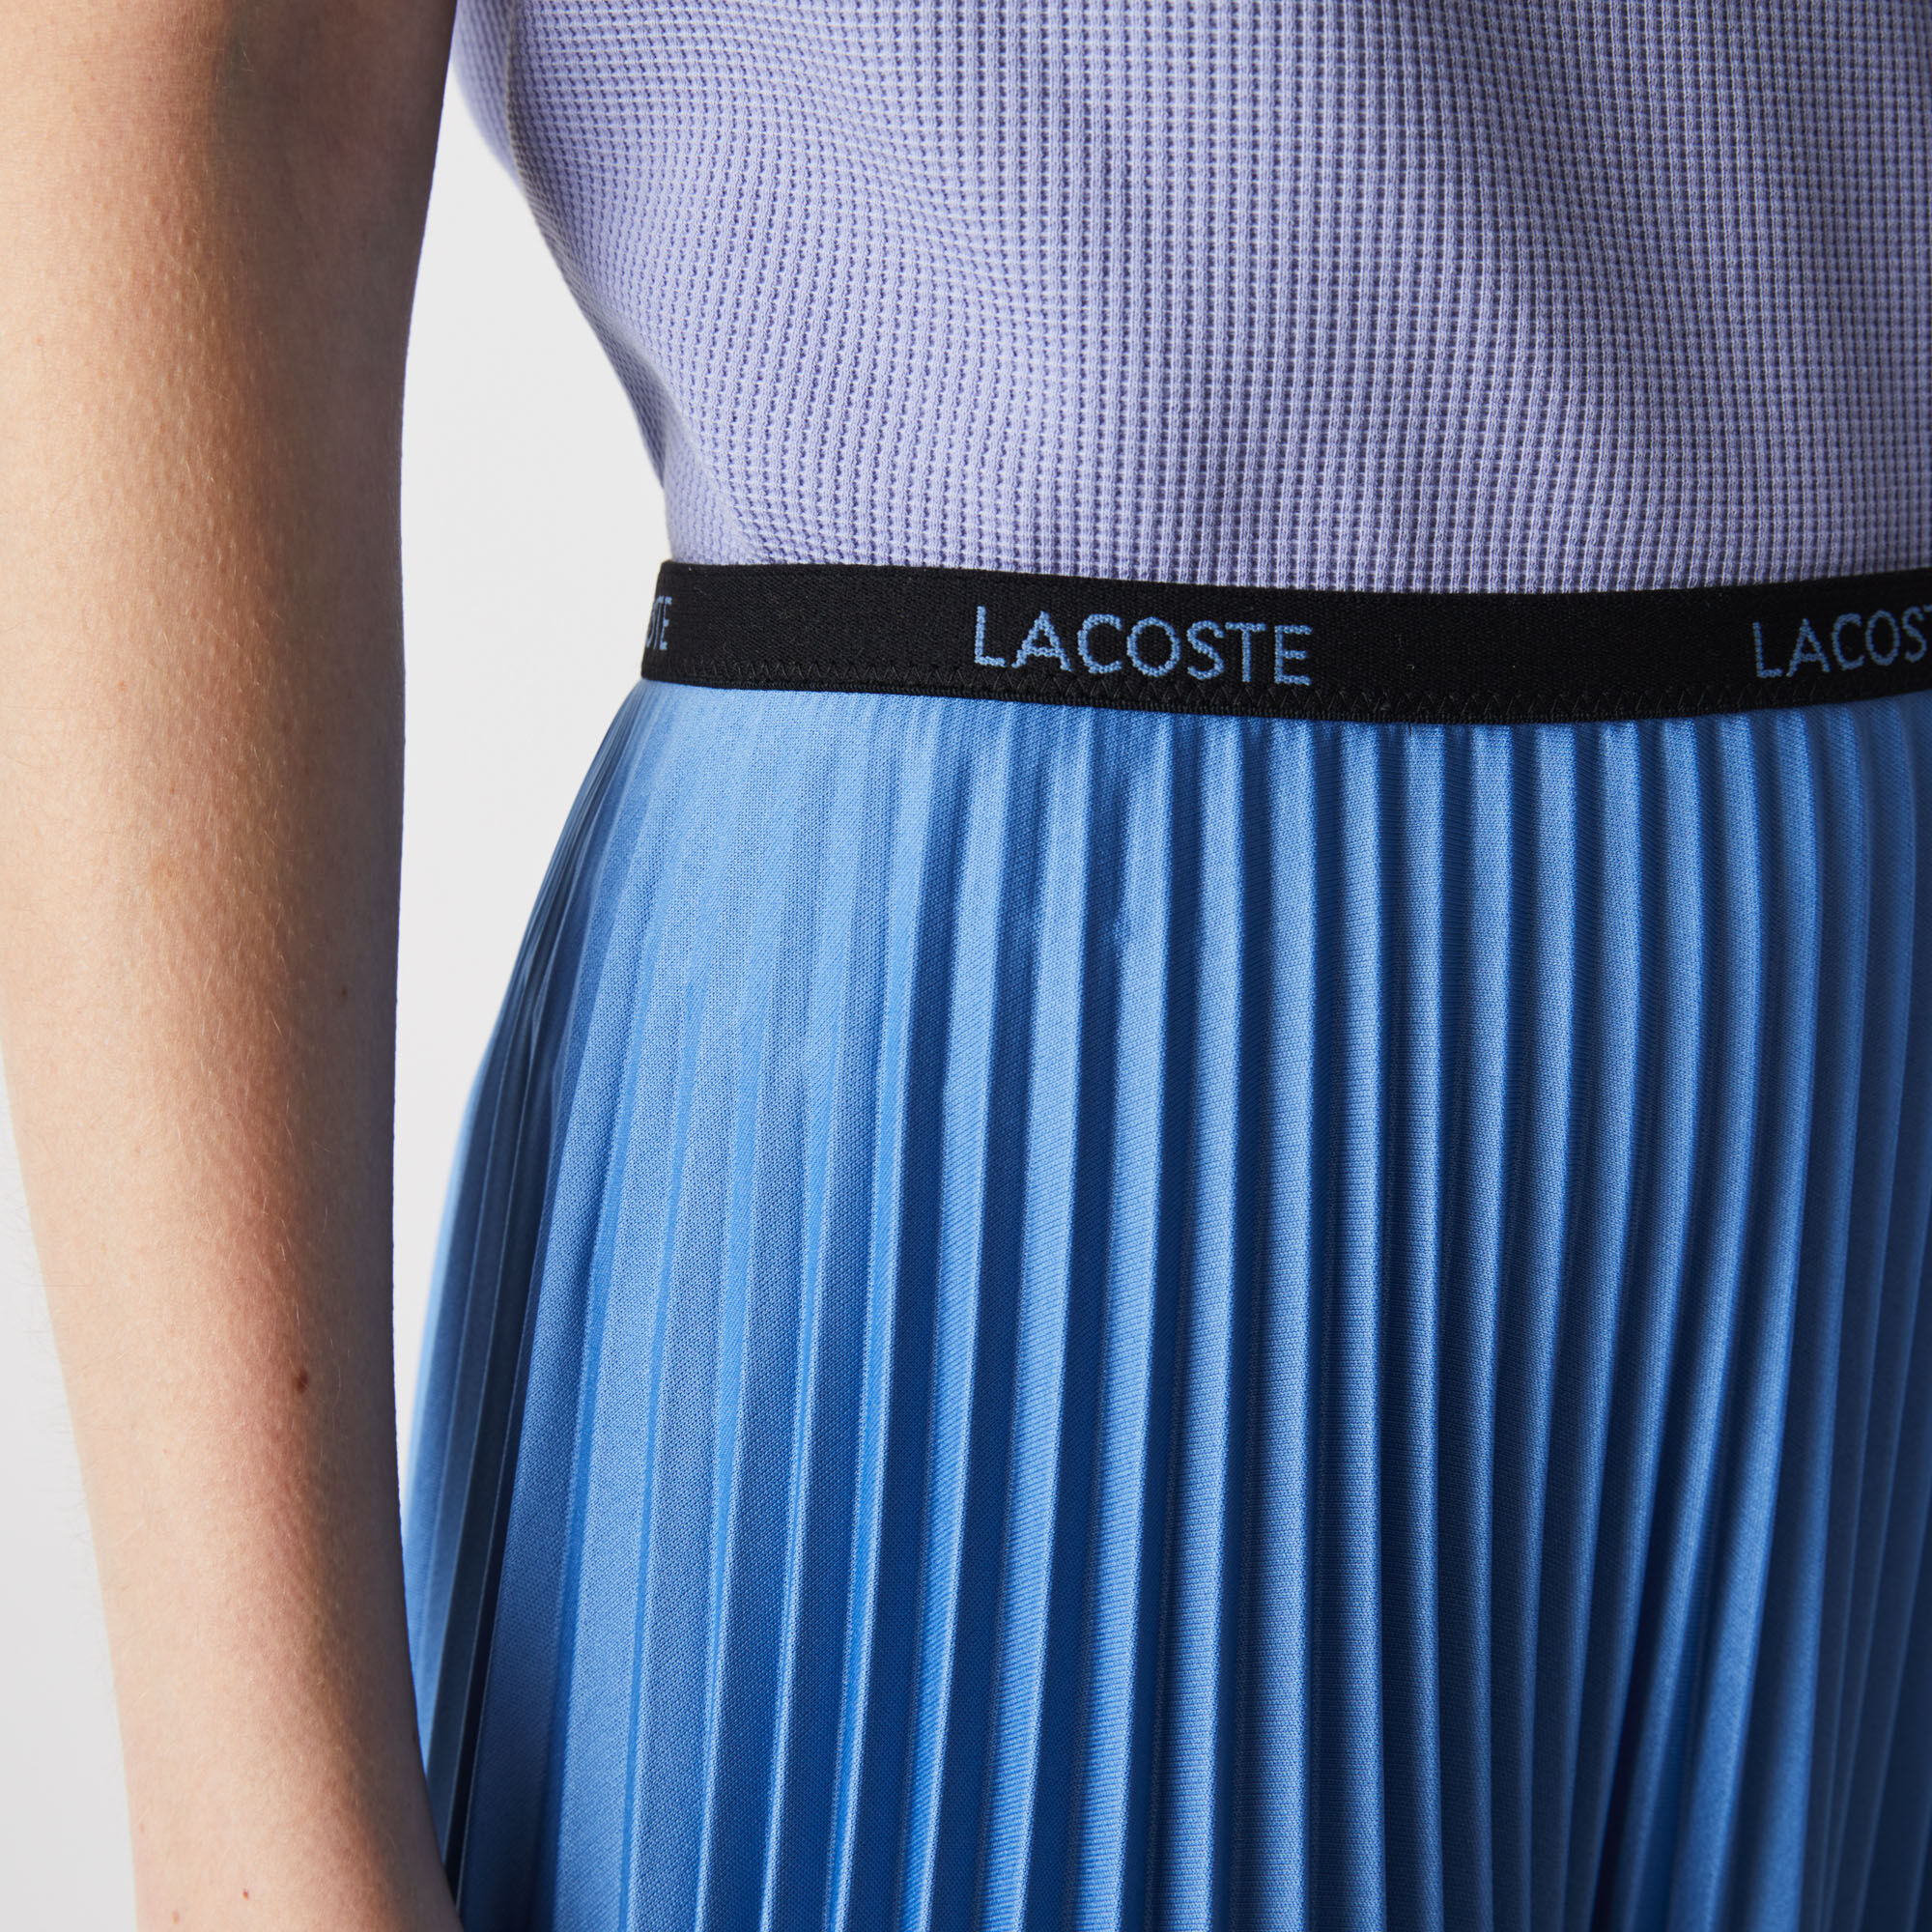 Women's Branded Elasticised Pleated Skirt